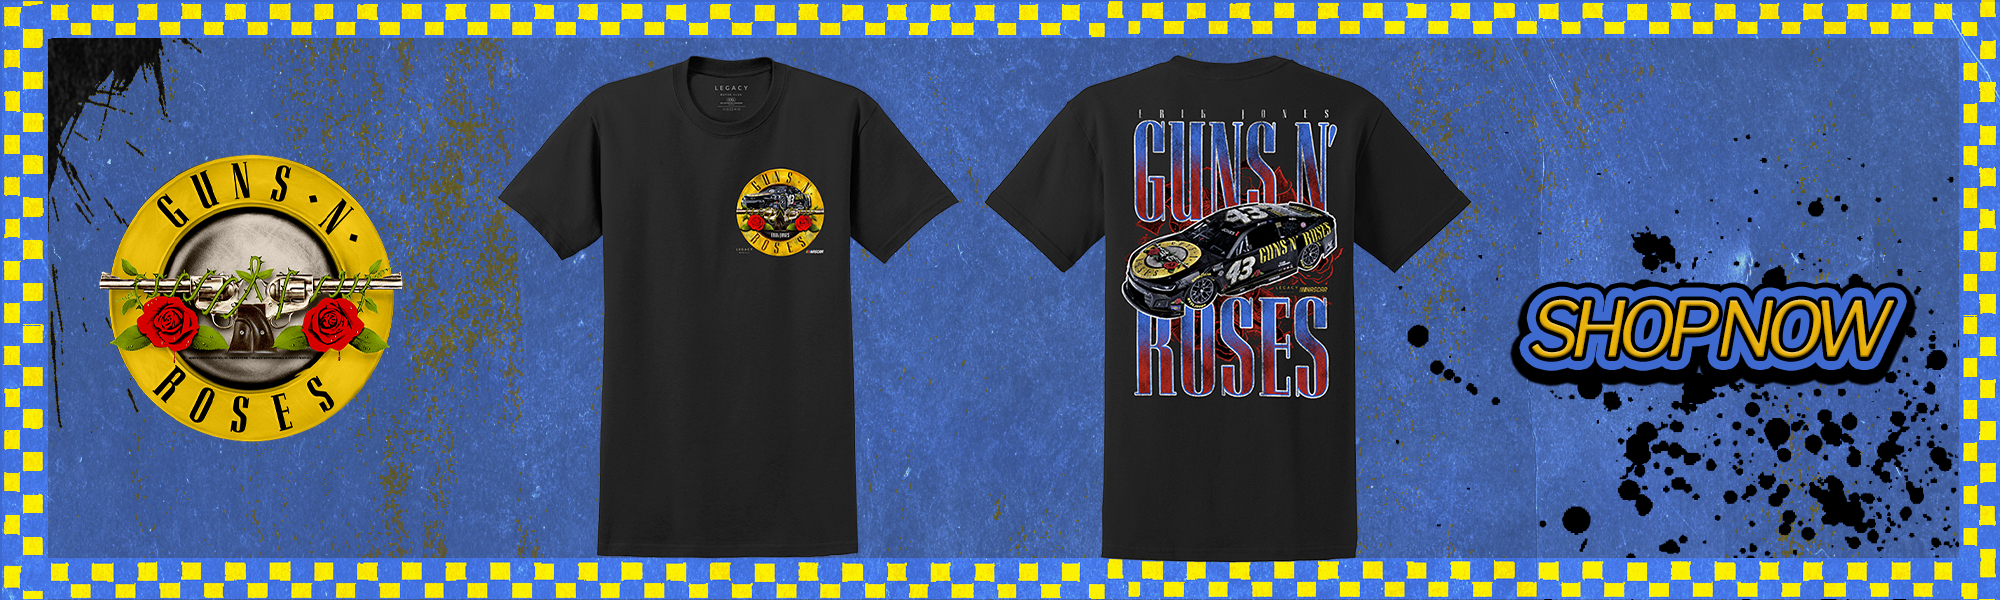 Guns N' Roses Pistols Flower Logo Women's T-shirt by Chaser Ships Free